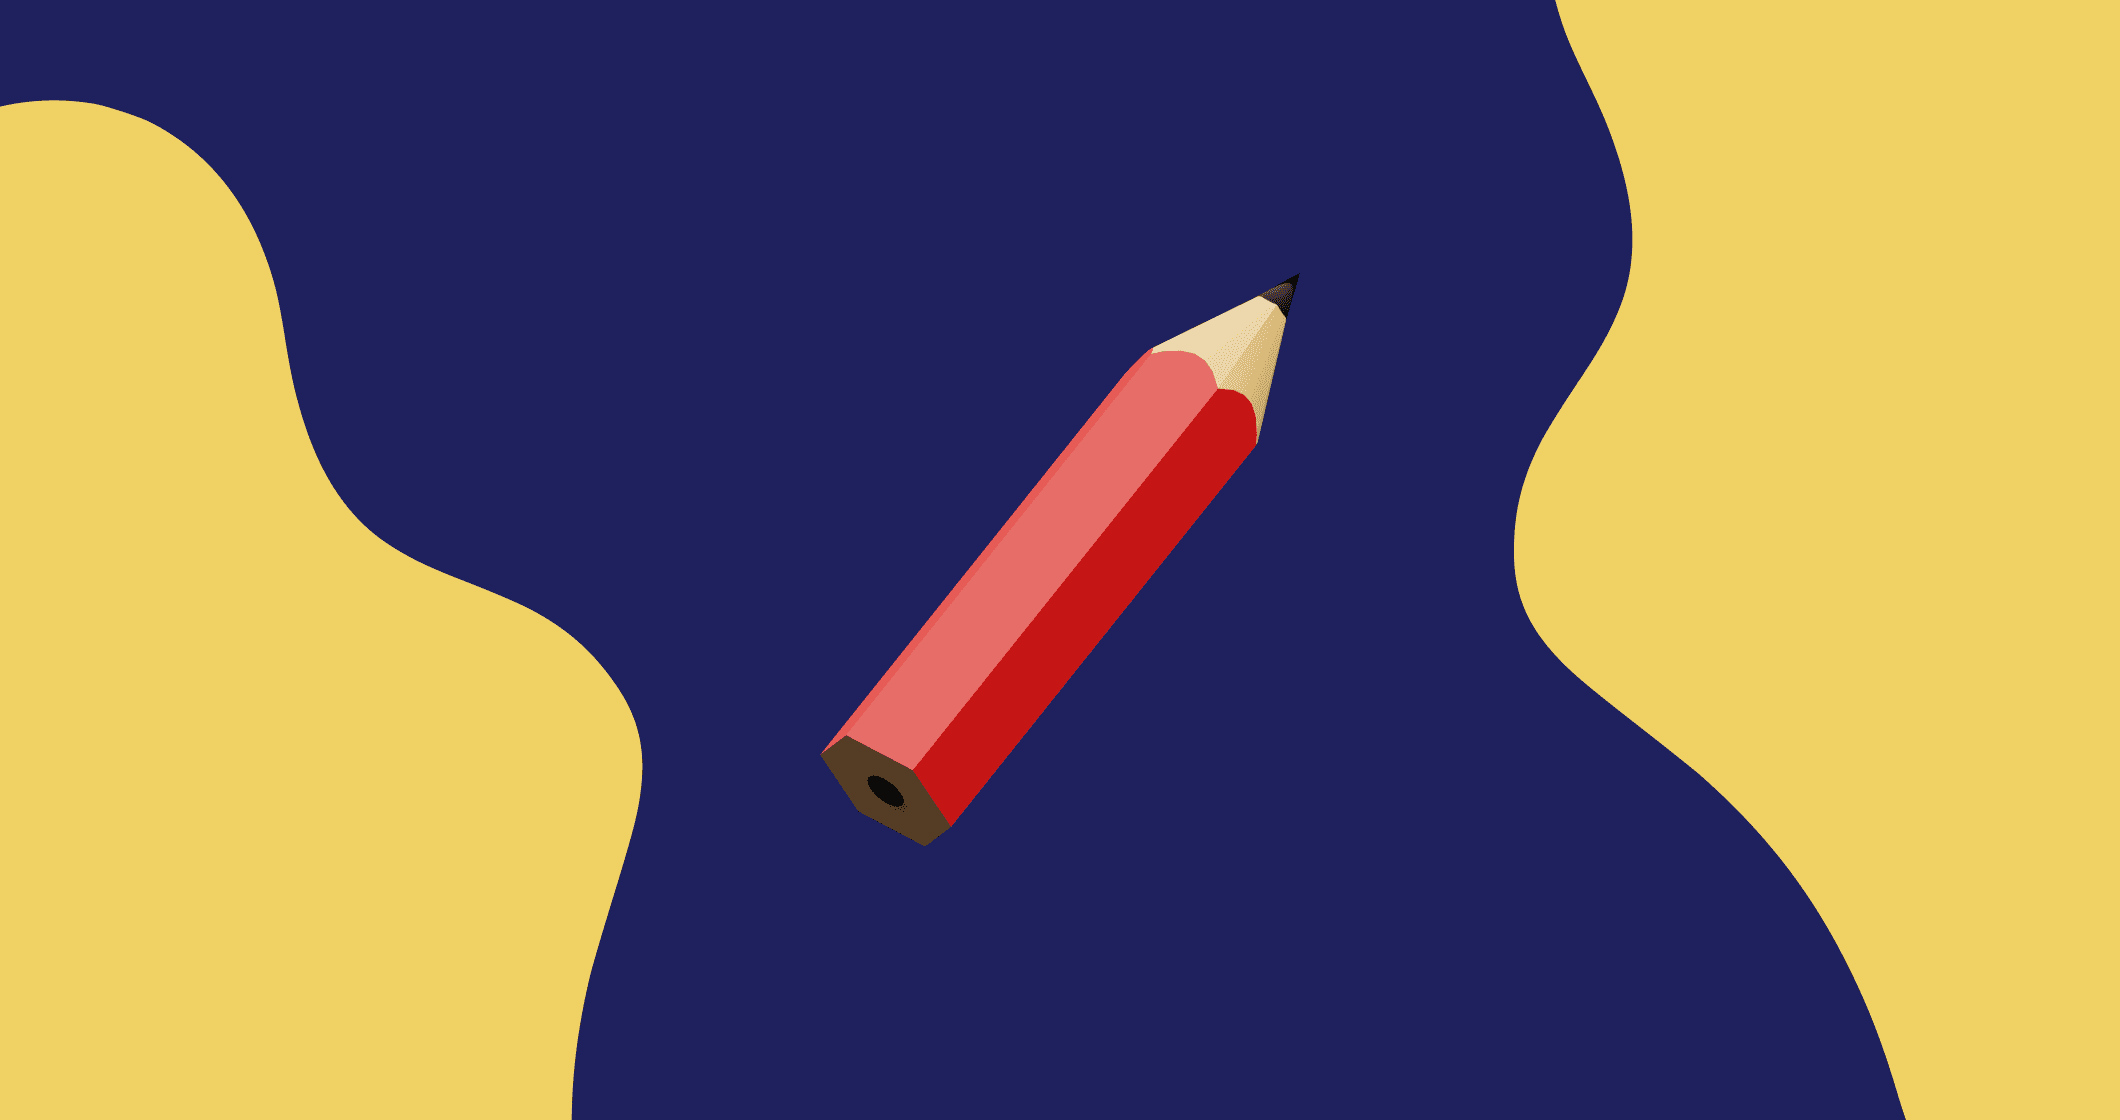 Uma ilustração de um lápis sobre um fundo azul.